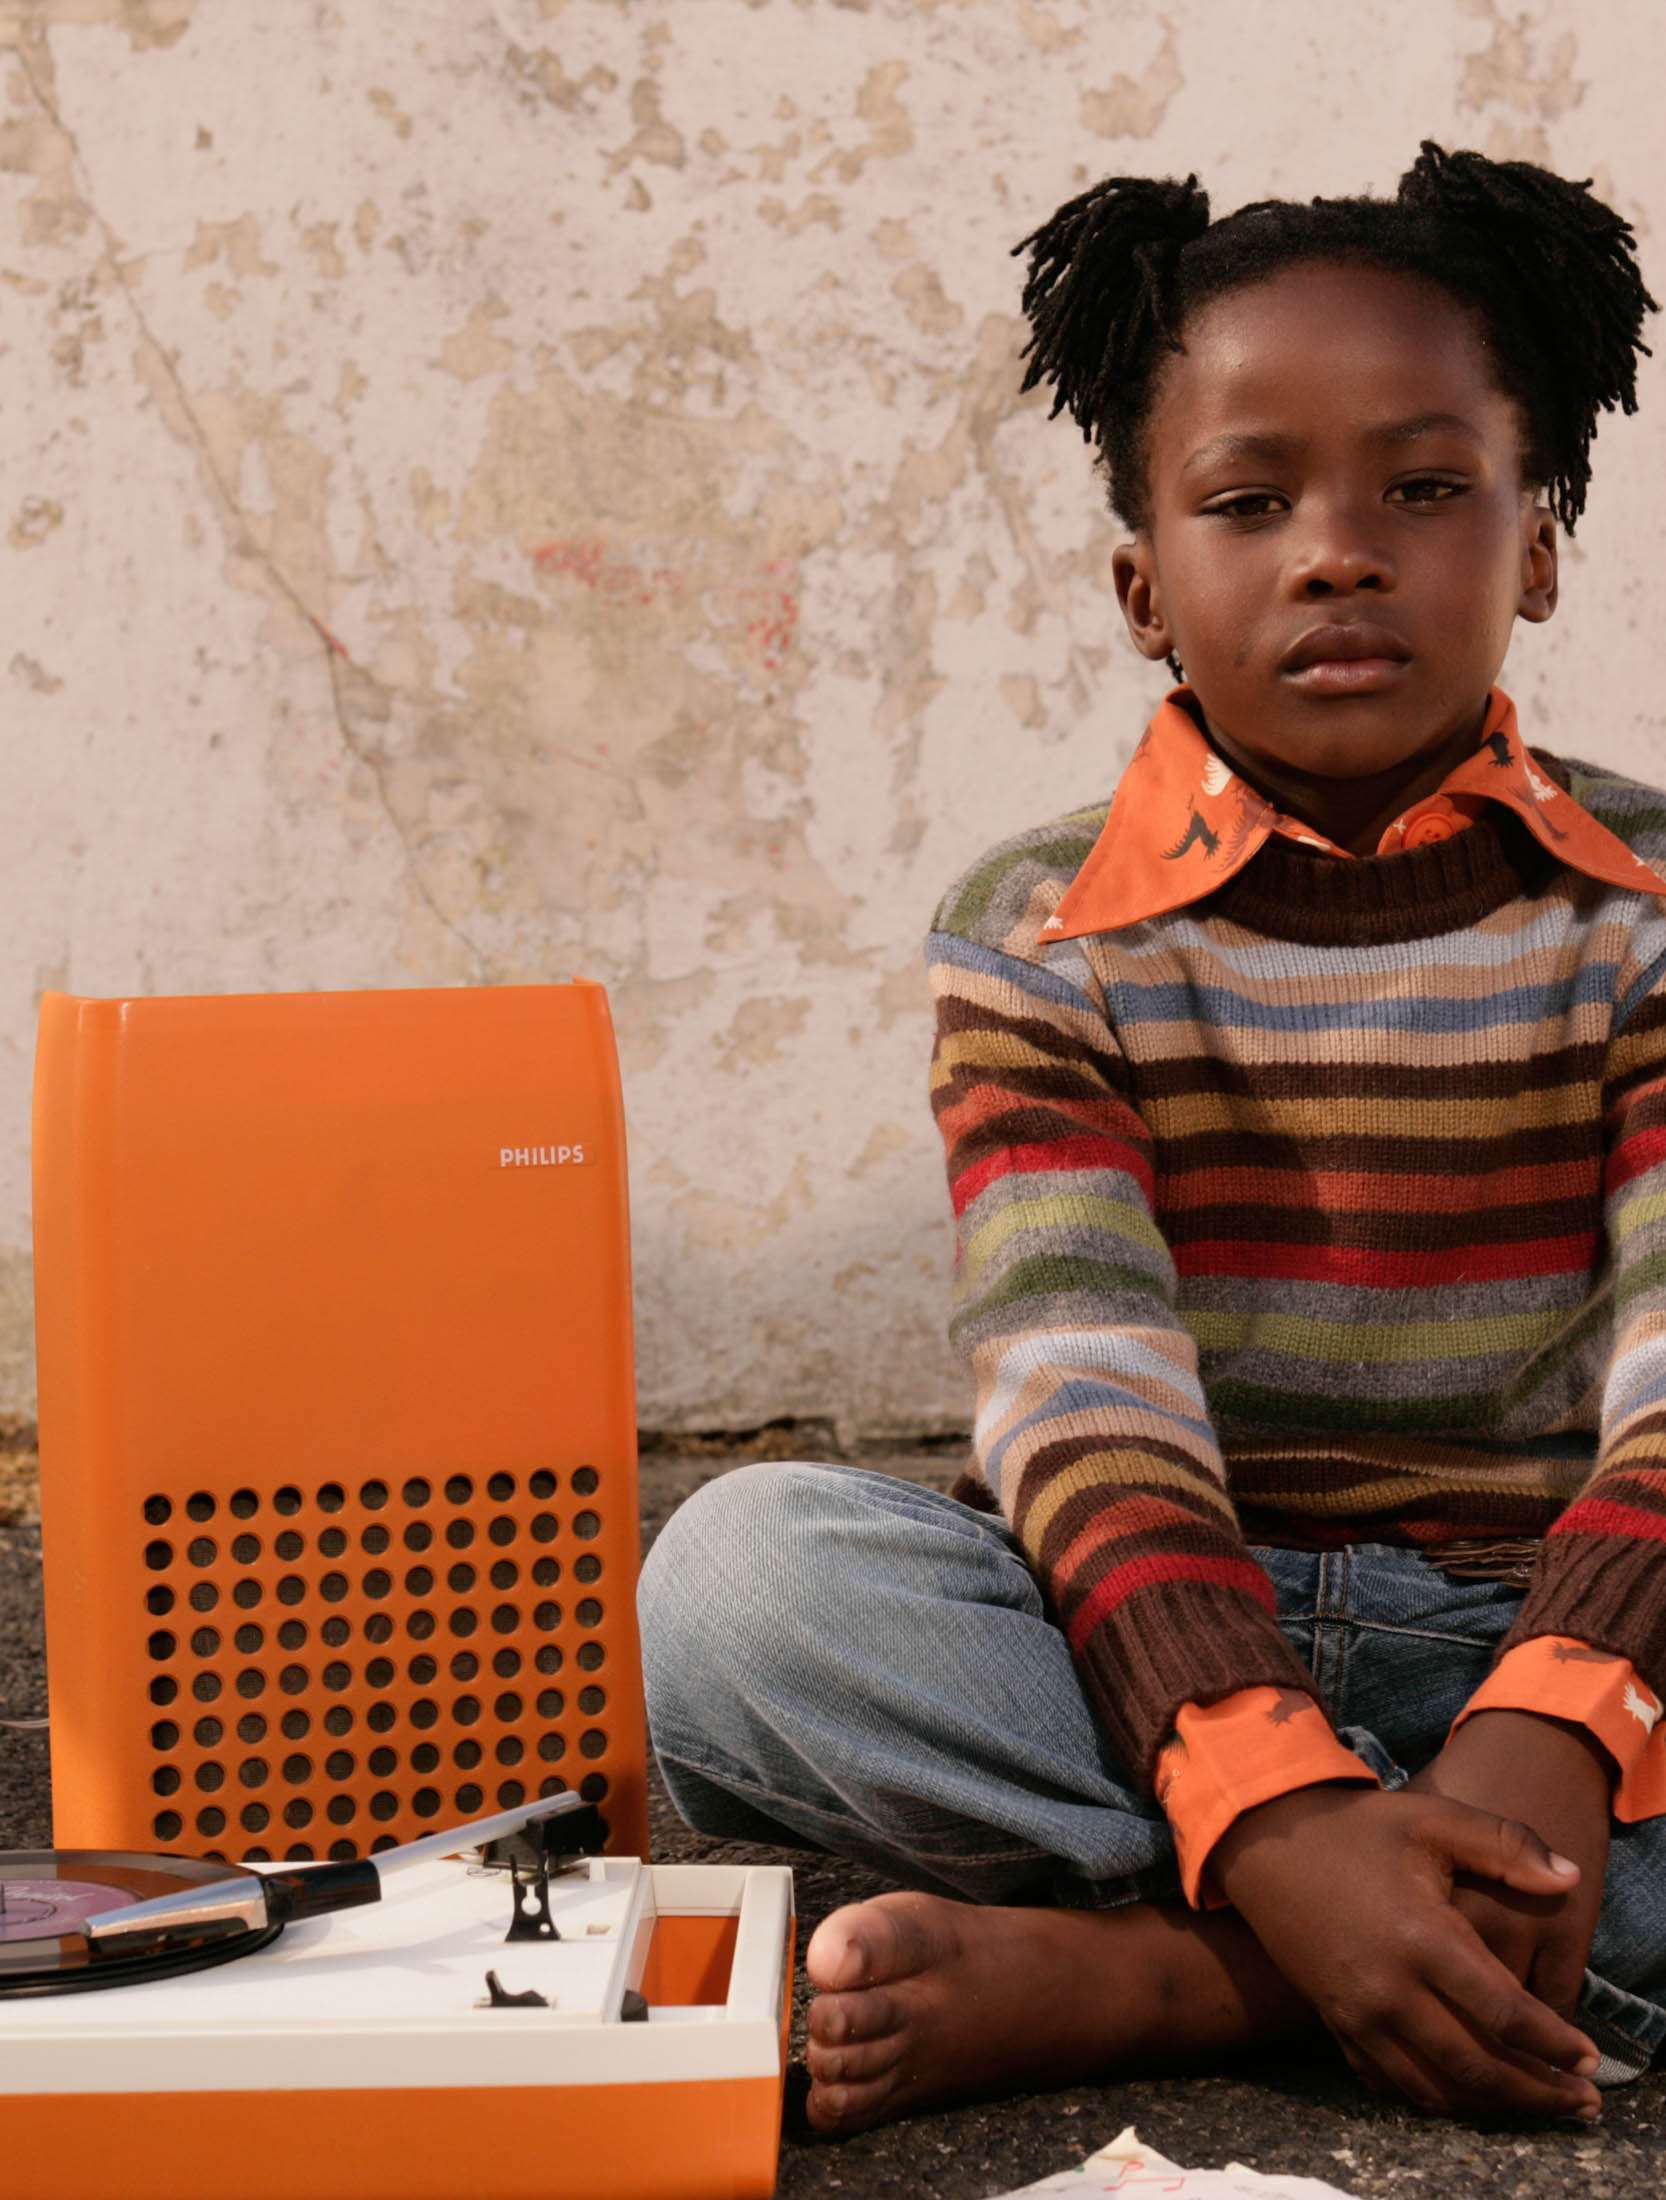 Ein junges Mädchen mit dunkler Haut und hochgesteckten Haaren sitzt auf dem Boden neben einem orangefarbenen Philips-Radio und blickt nachdenklich in die Kamera. Vor ihr liegen eine Schachtel und kleine Gegenstände. © Fotografie Tomas Rodriguez